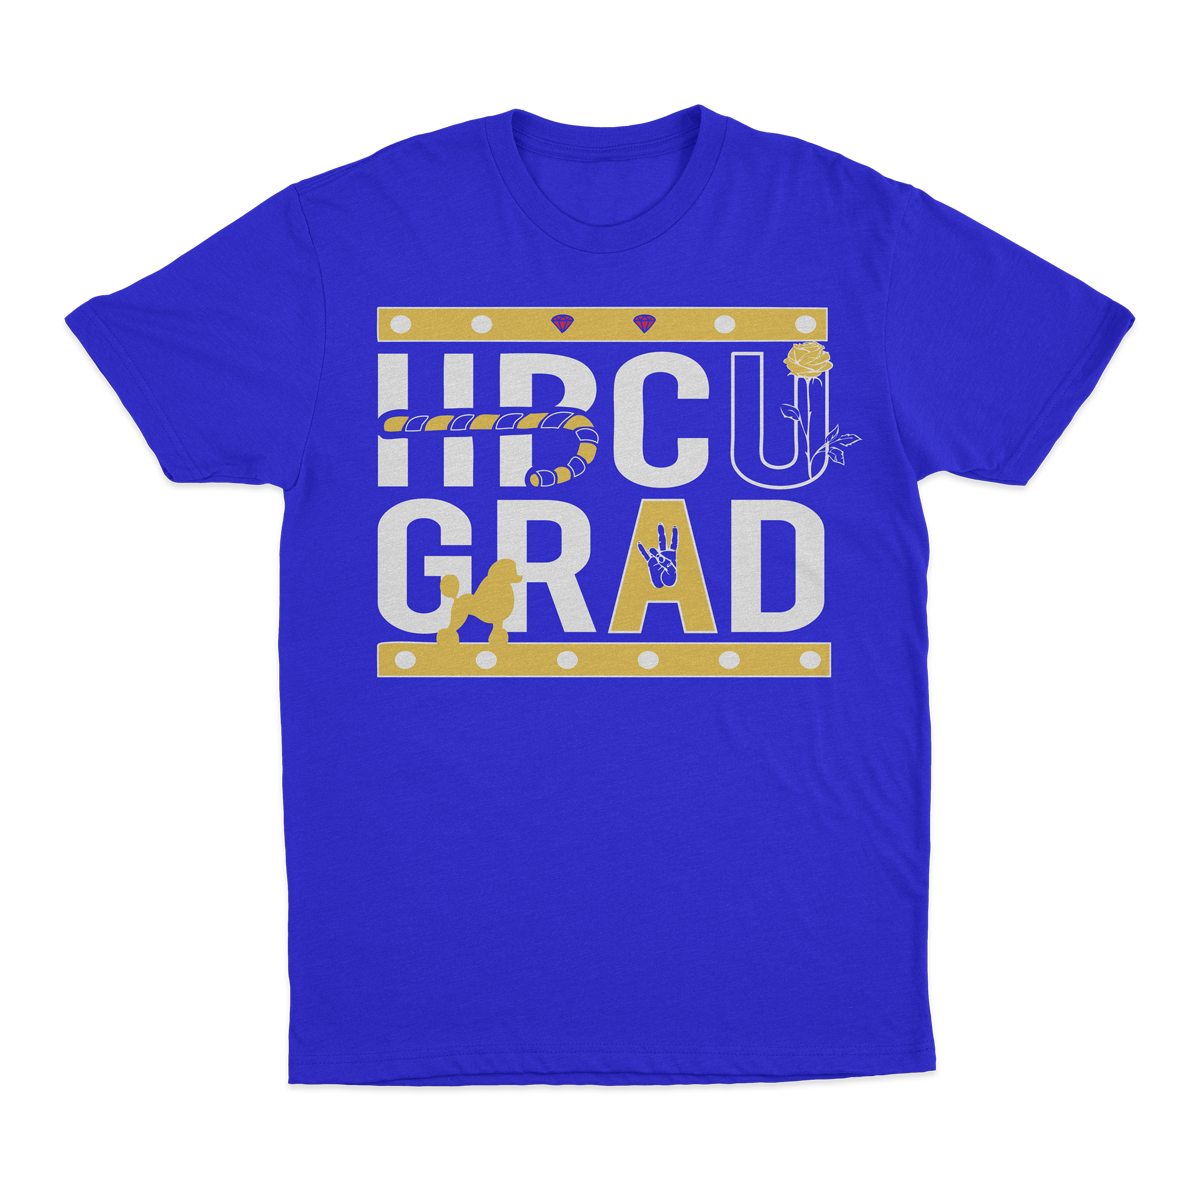 HBCU GRAD | Poodle Edition | Tshirt - Blue